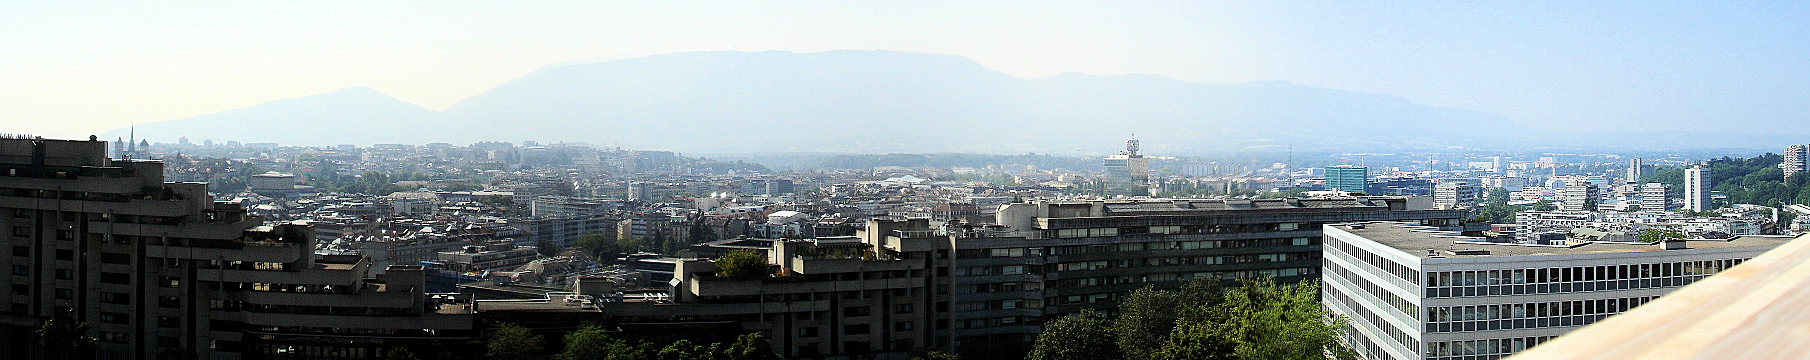 Plus haut, plus beau  ... voici un magnifique point de vue sur la ville de Genève